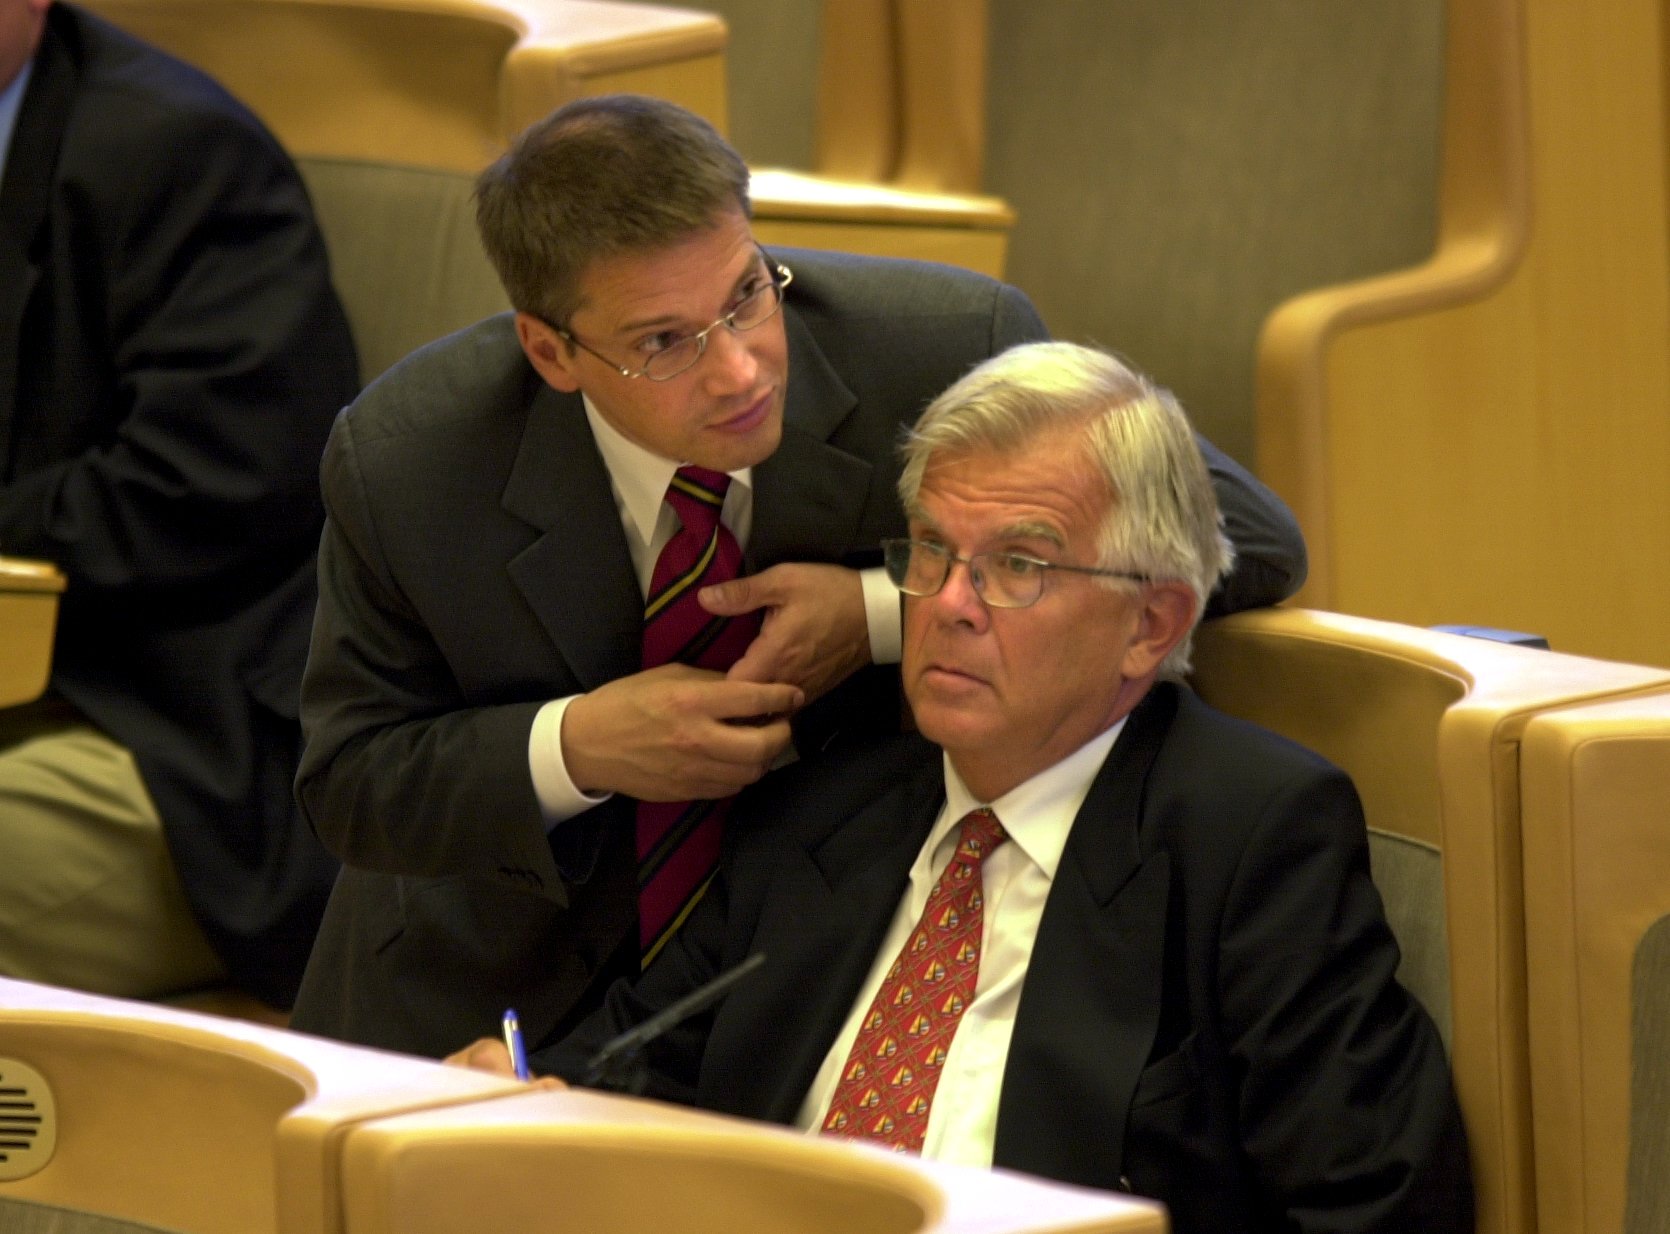 Diskussion mellan dåvarande gruppledaren Hägglund och partiledaren Alf Svensson 2002.